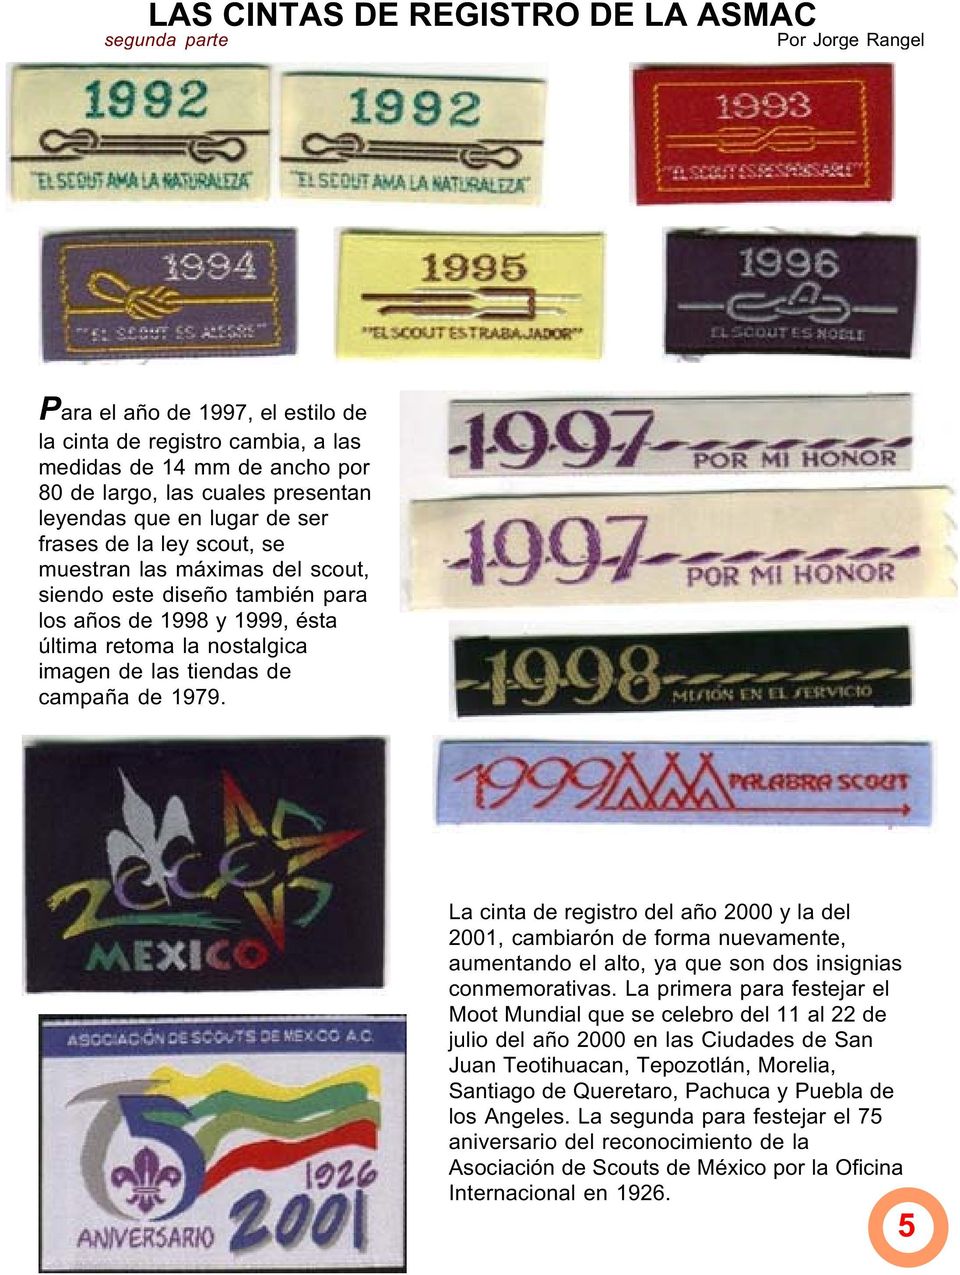 de campaña de 1979. La cinta de registro del año 2000 y la del 2001, cambiarón de forma nuevamente, aumentando el alto, ya que son dos insignias conmemorativas.